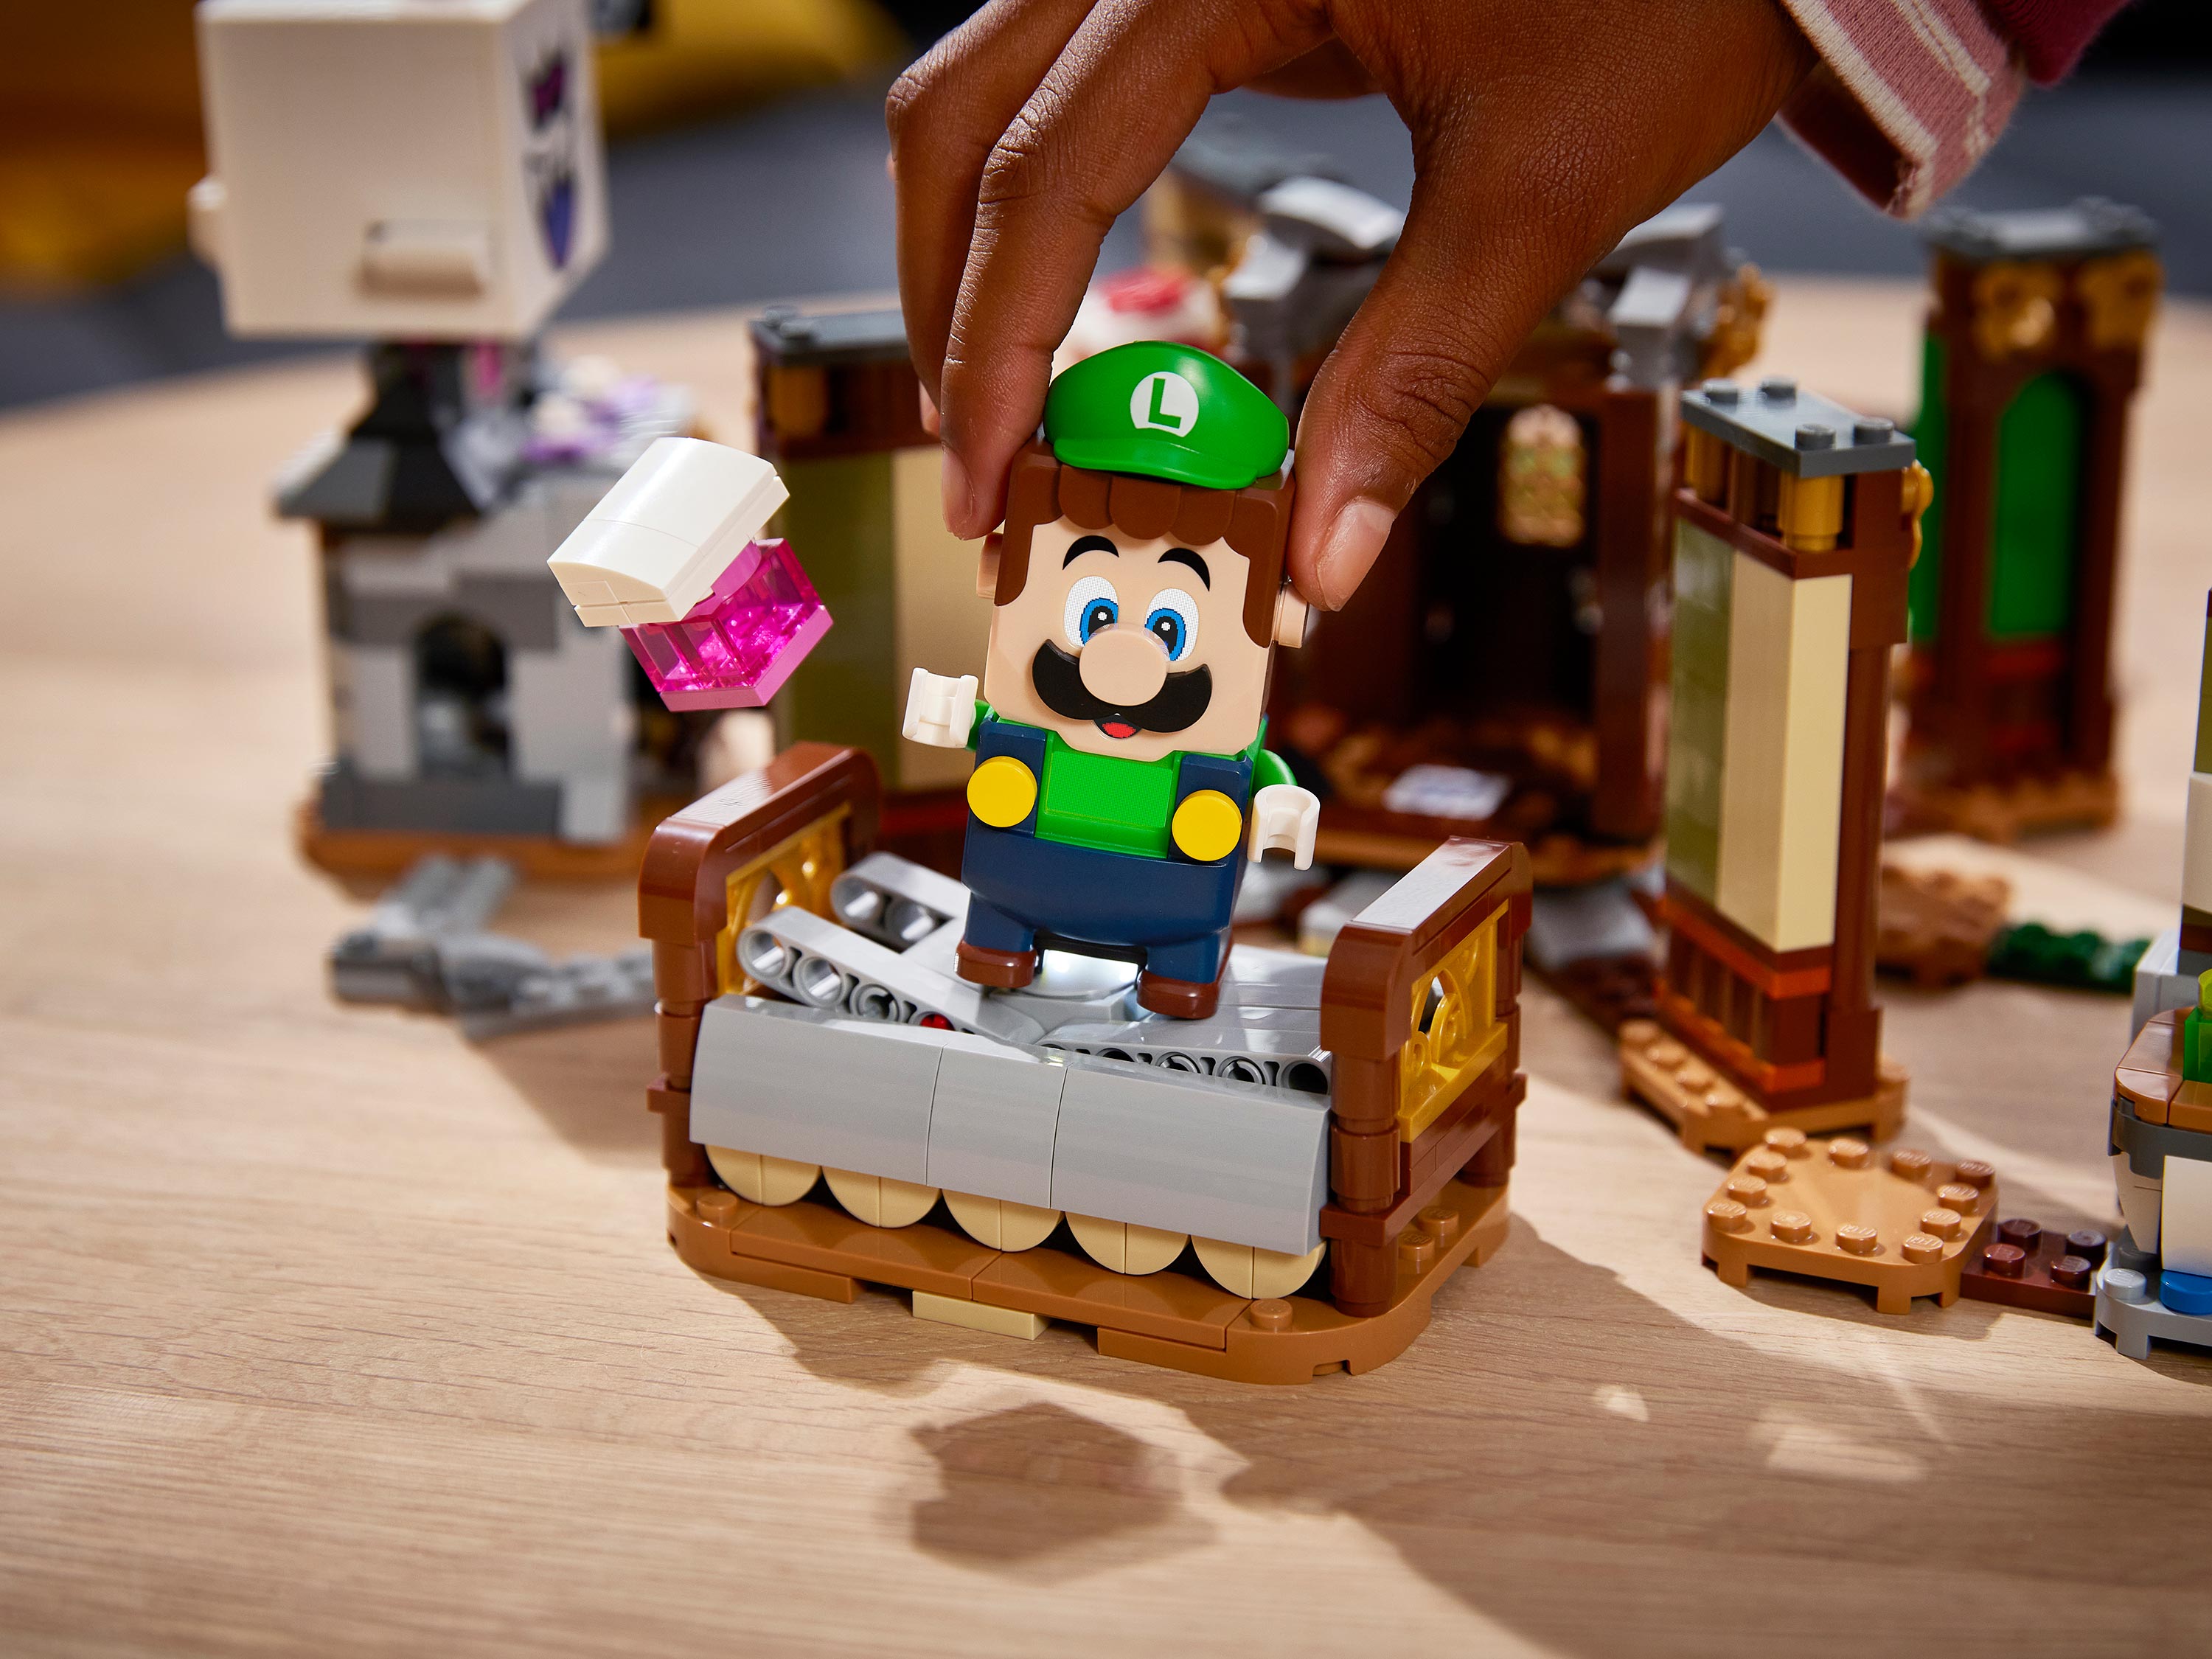 Конструктор Lego Super Mario 71401 Дополнительный набор Luigi’s Mansion: призрачные прятки»